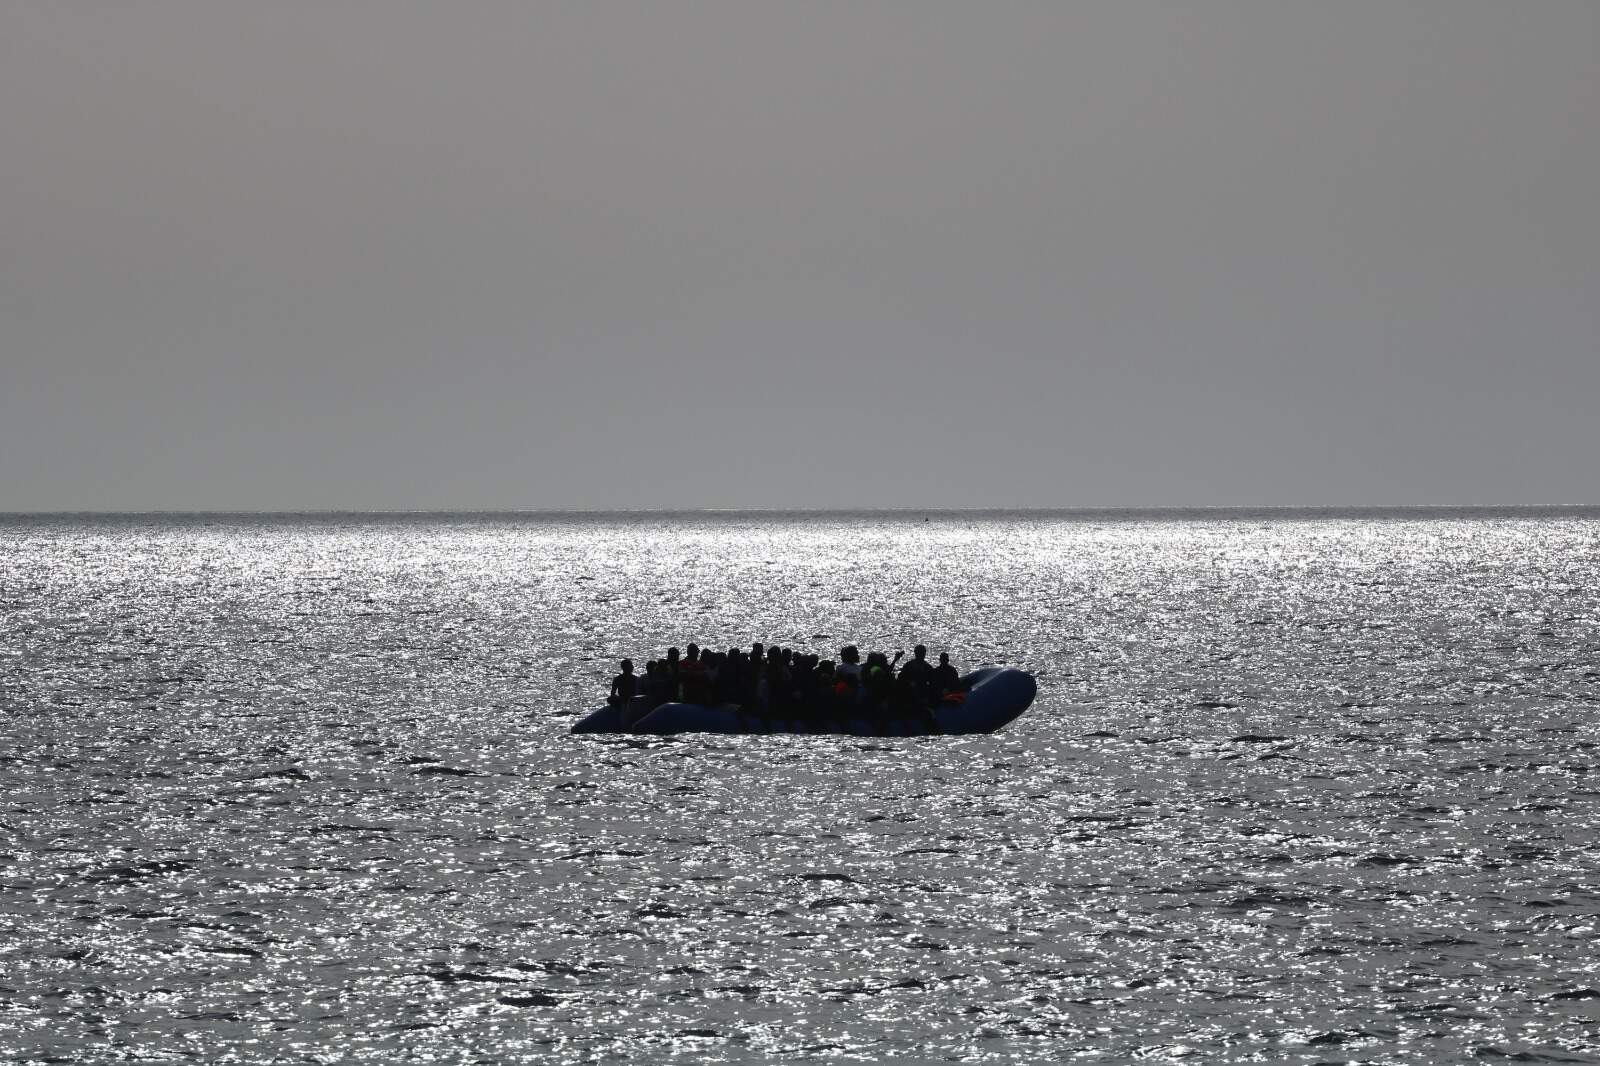 Sguardo sul Mediterraneo #52 – Nel giro di pochi giorni, tragedie e soccorsi si alternano nel Mediterraneo 